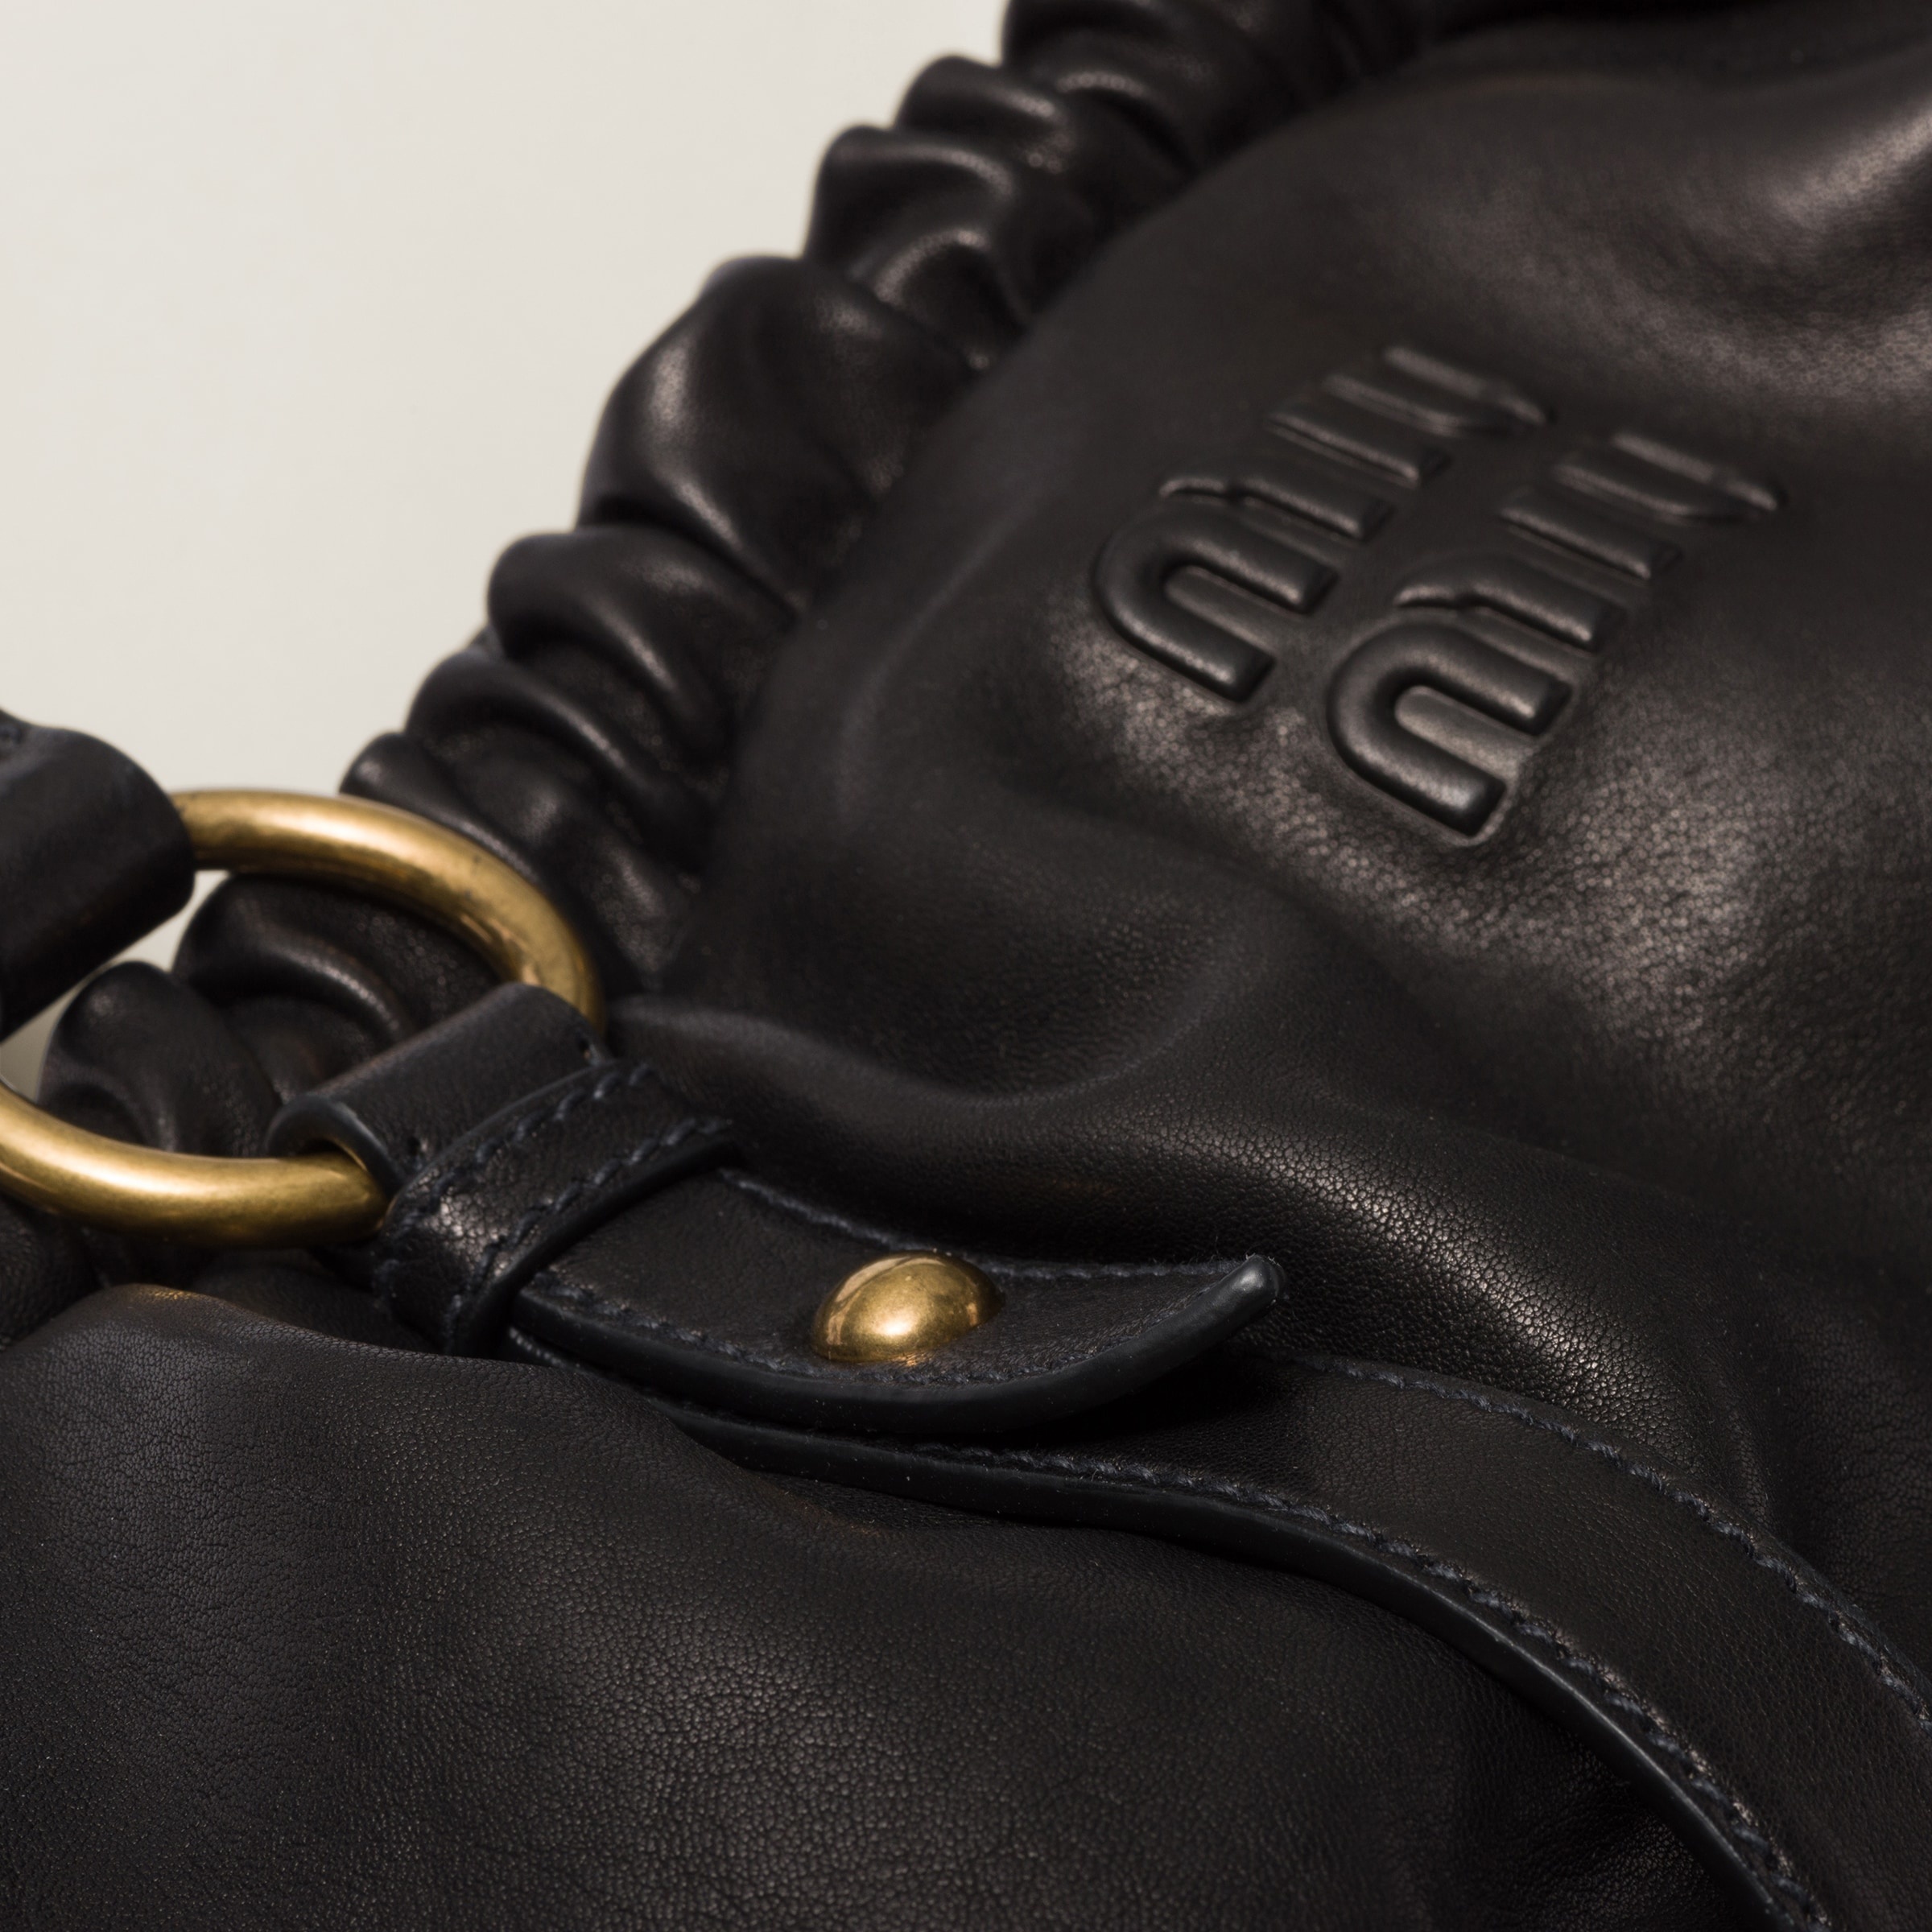 Nappa leather bag - 5